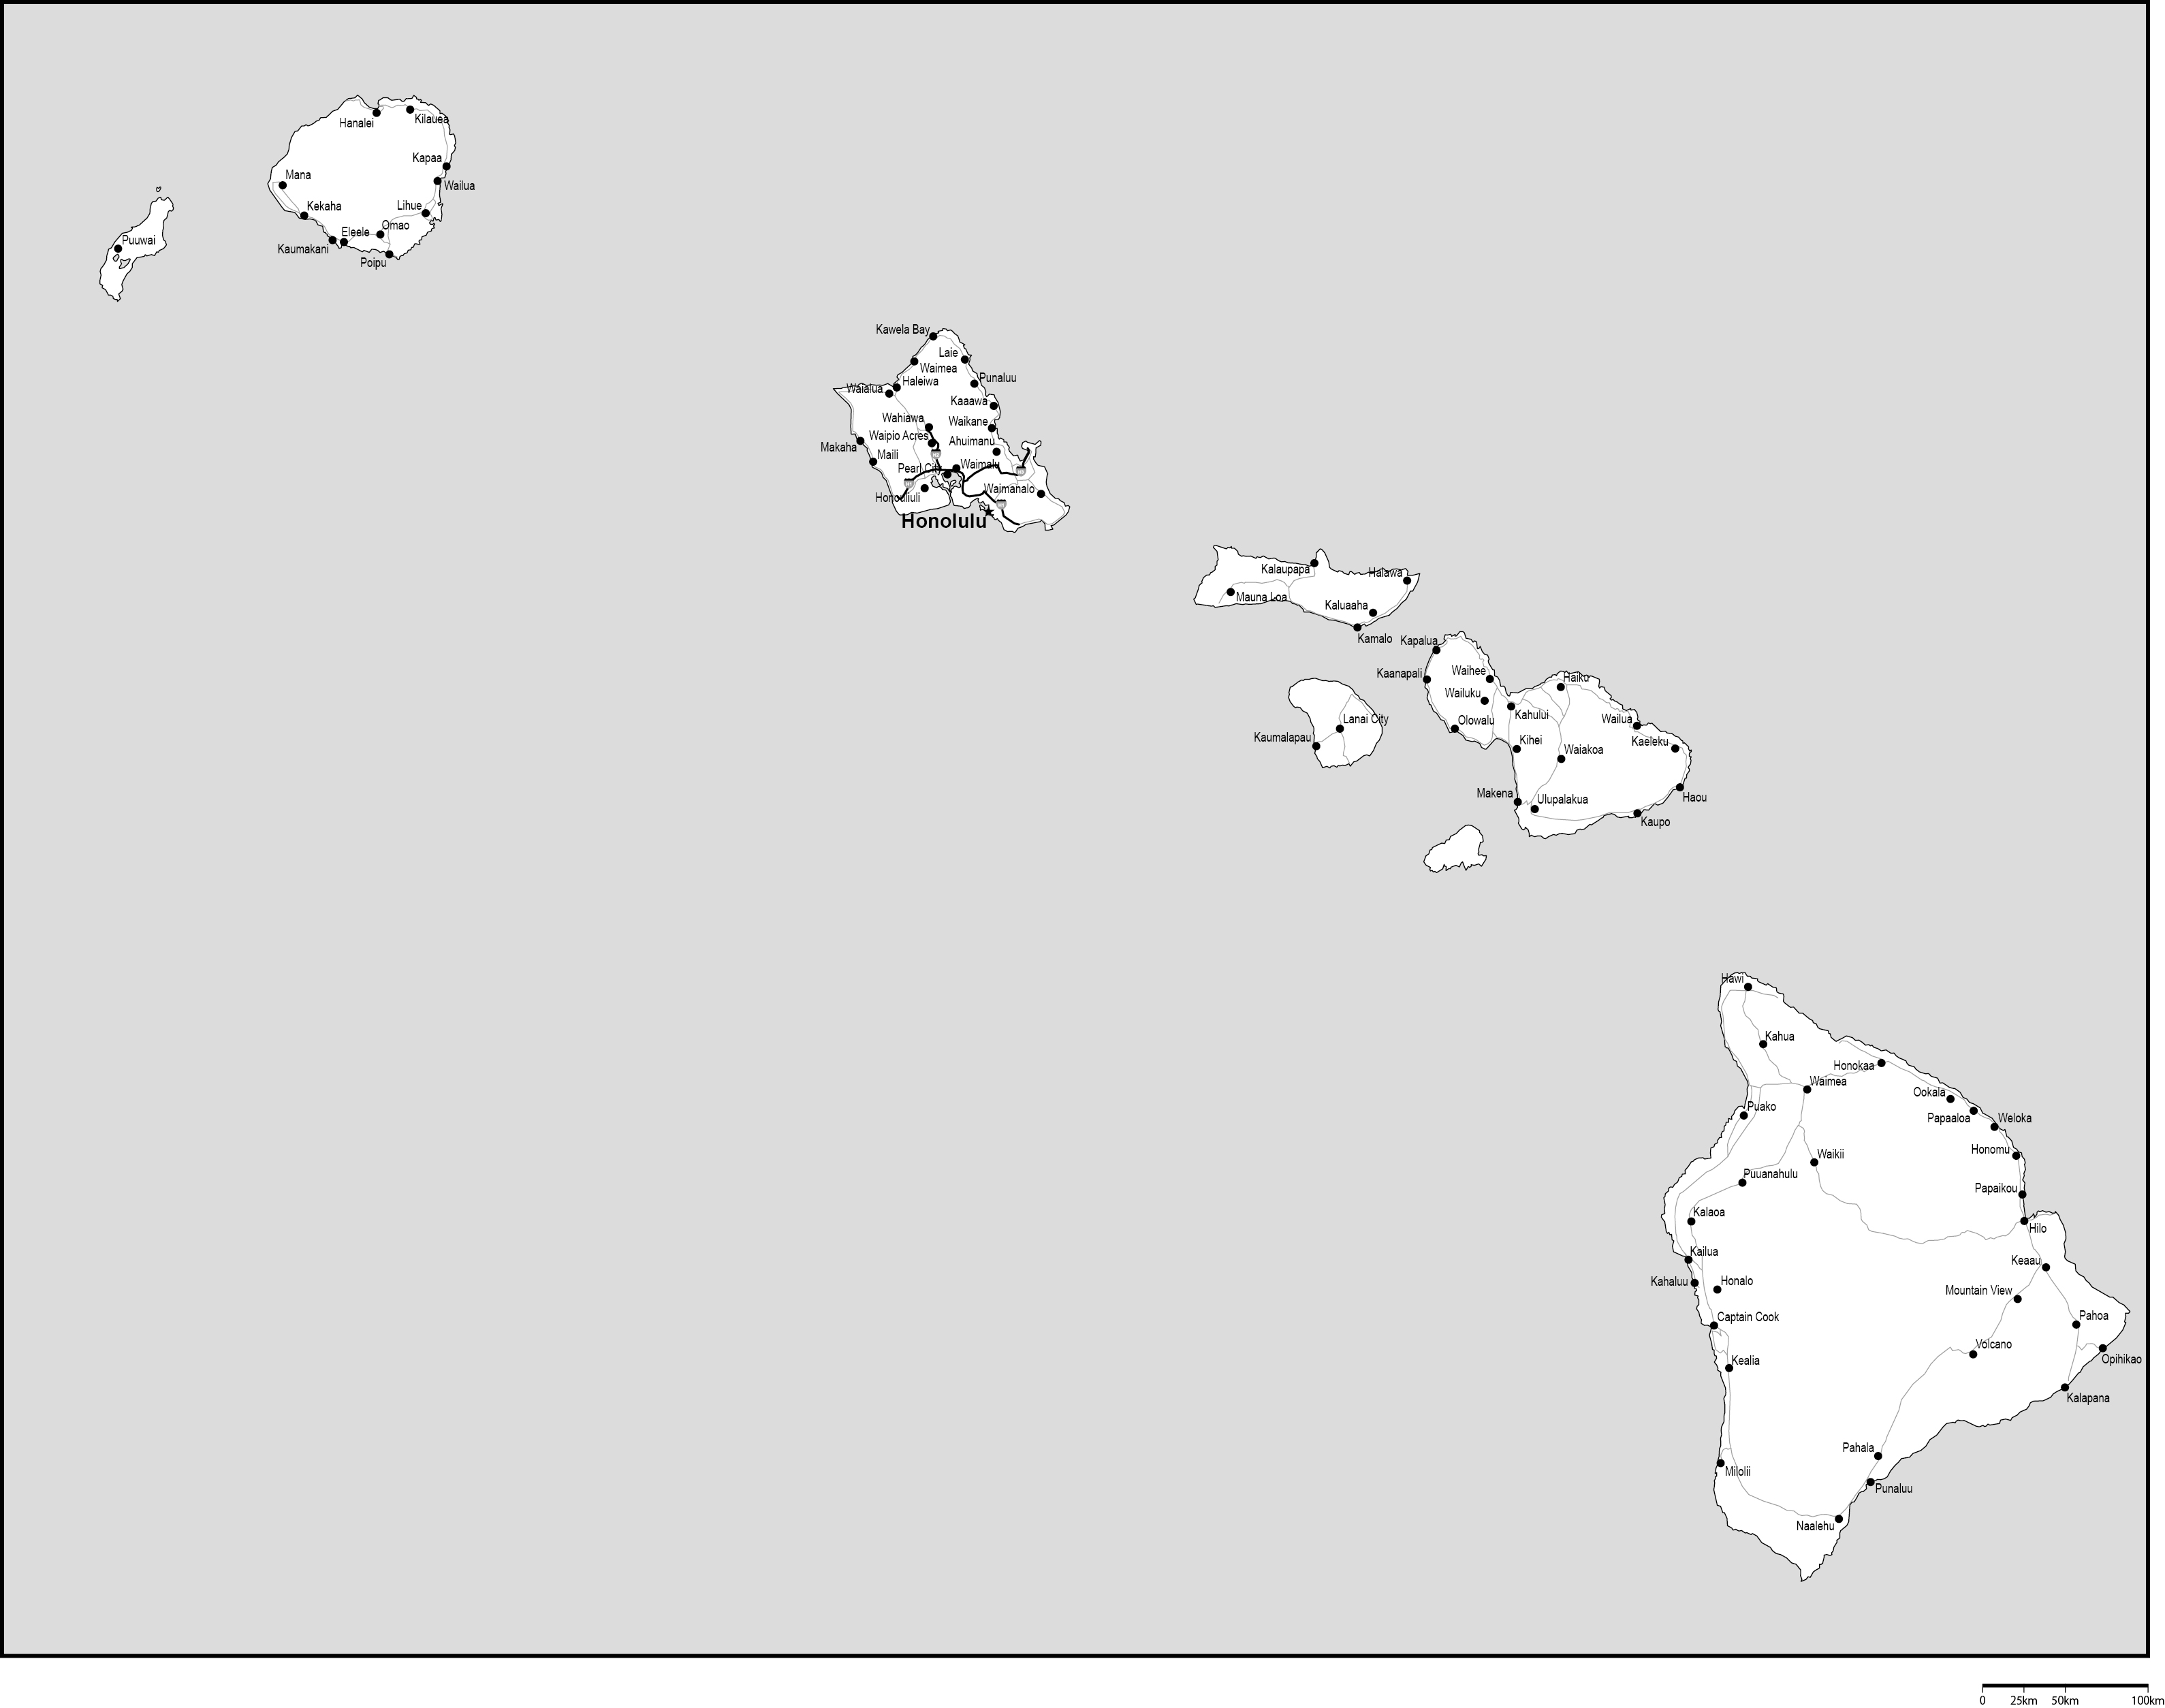 ハワイ州白地図州都・主な都市・道路あり(英語)フリーデータの画像